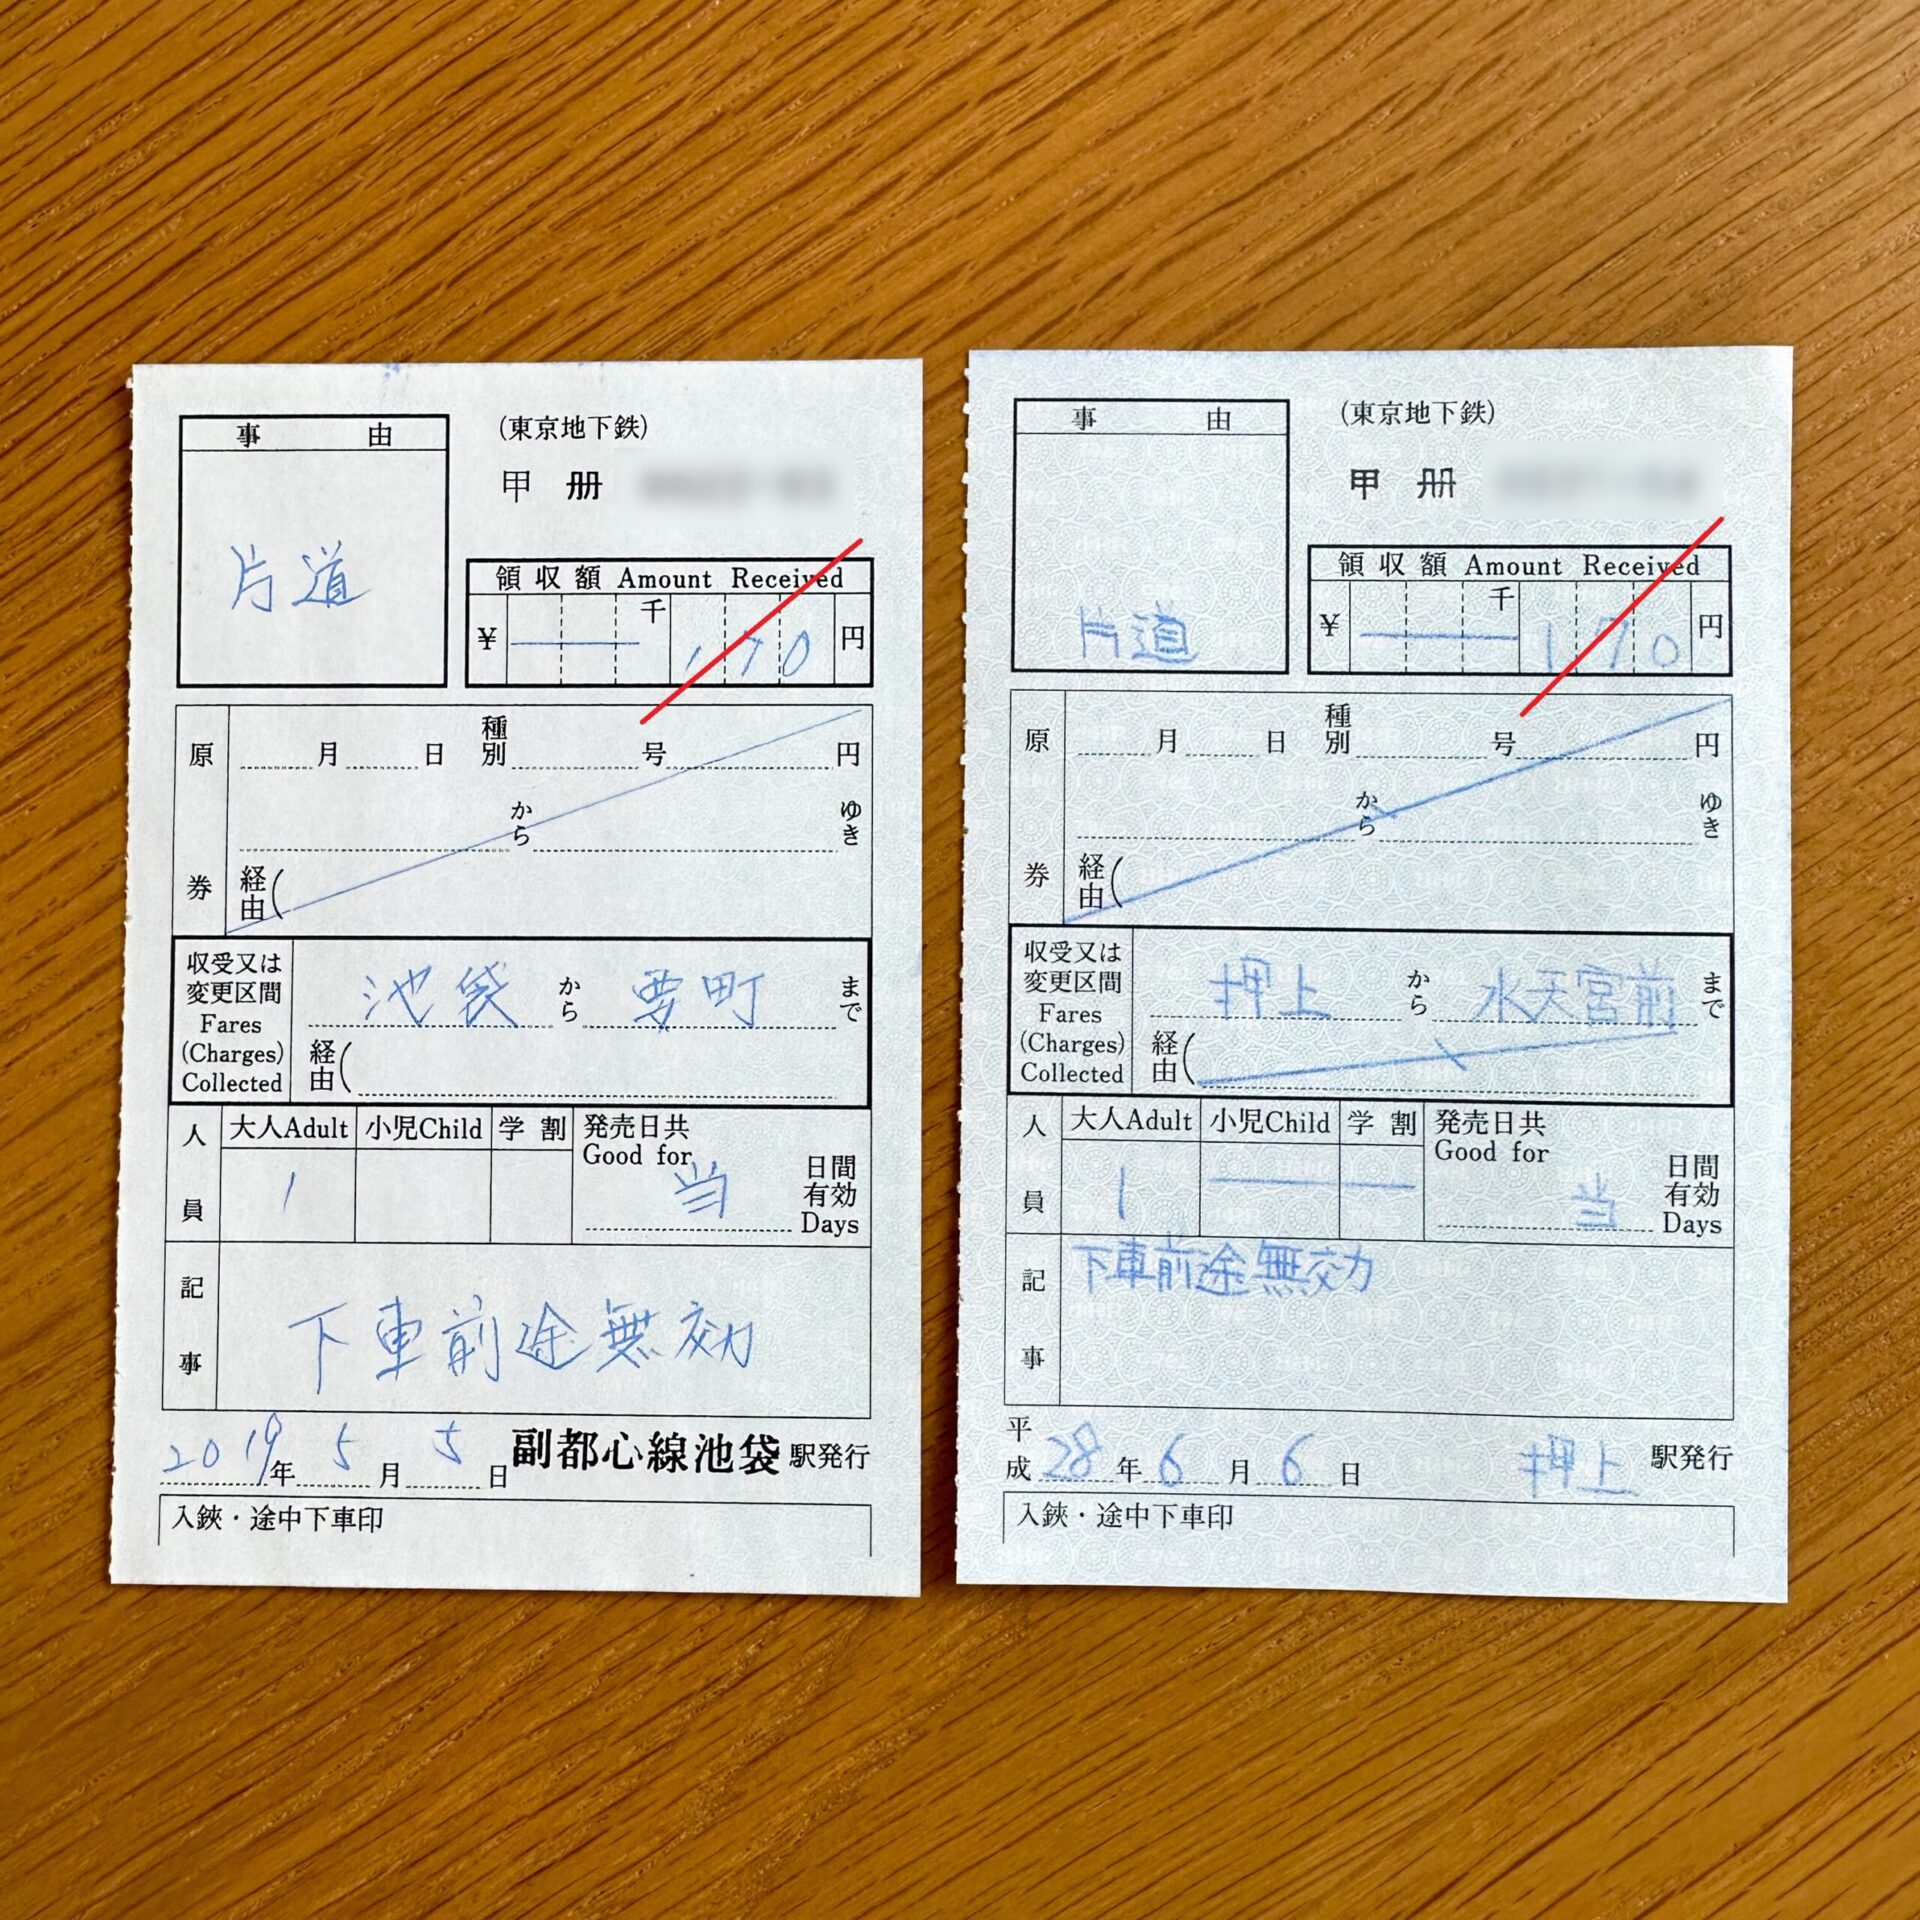 東京地下鉄特別補充券